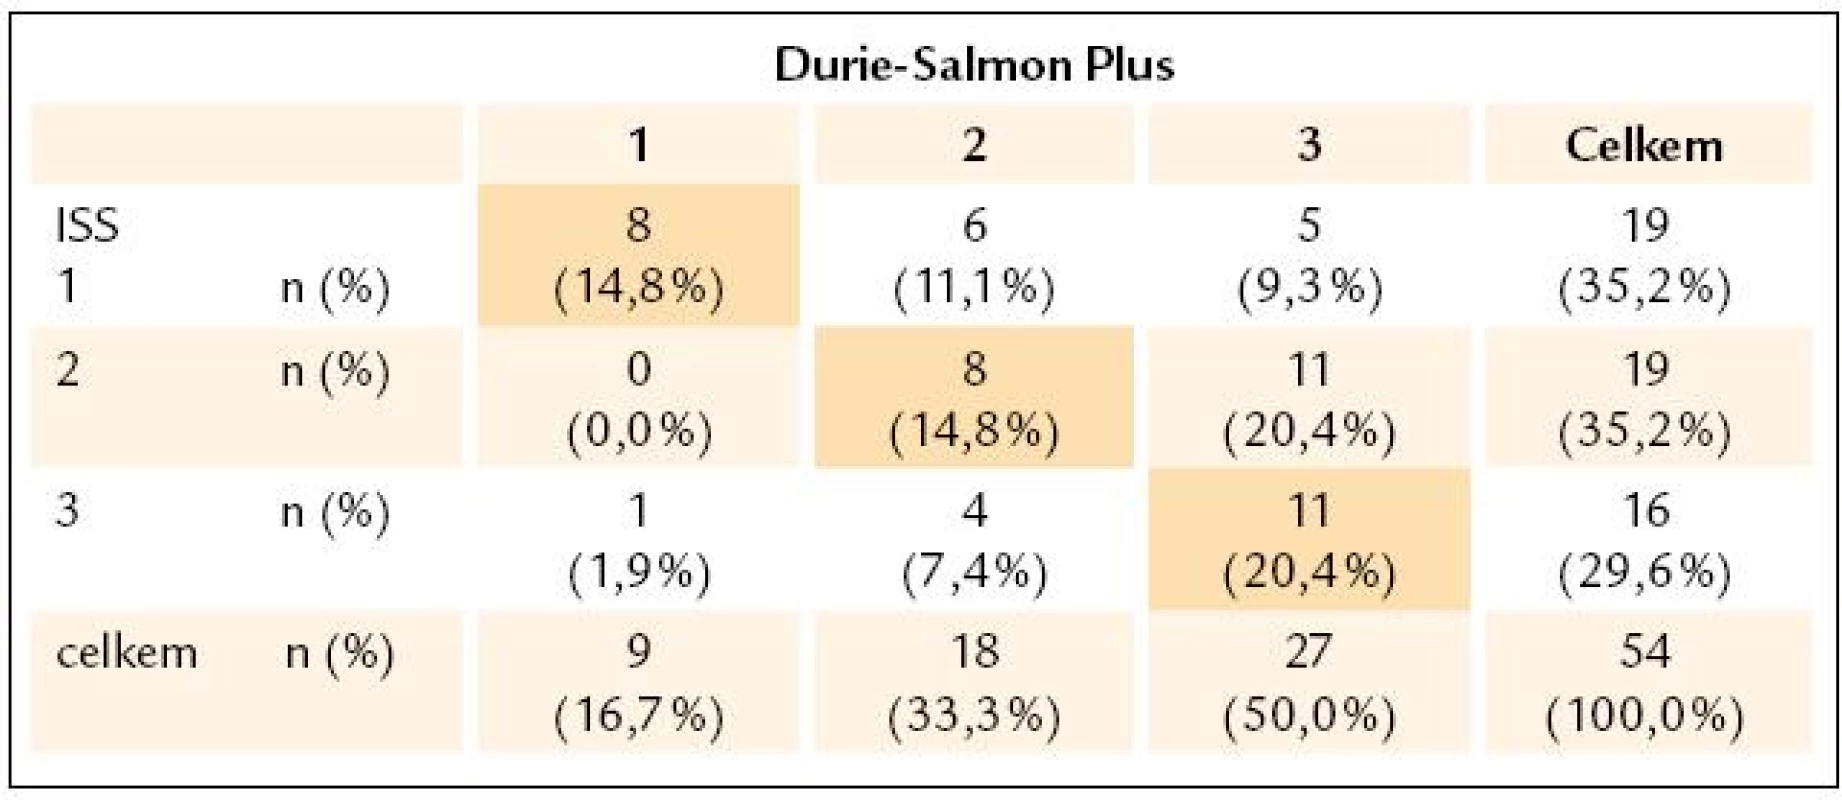 Kontingenční tabulky zastoupení stadií 1-3 vyhodnocených podle Durie-Salmona Plus a International Staging System.